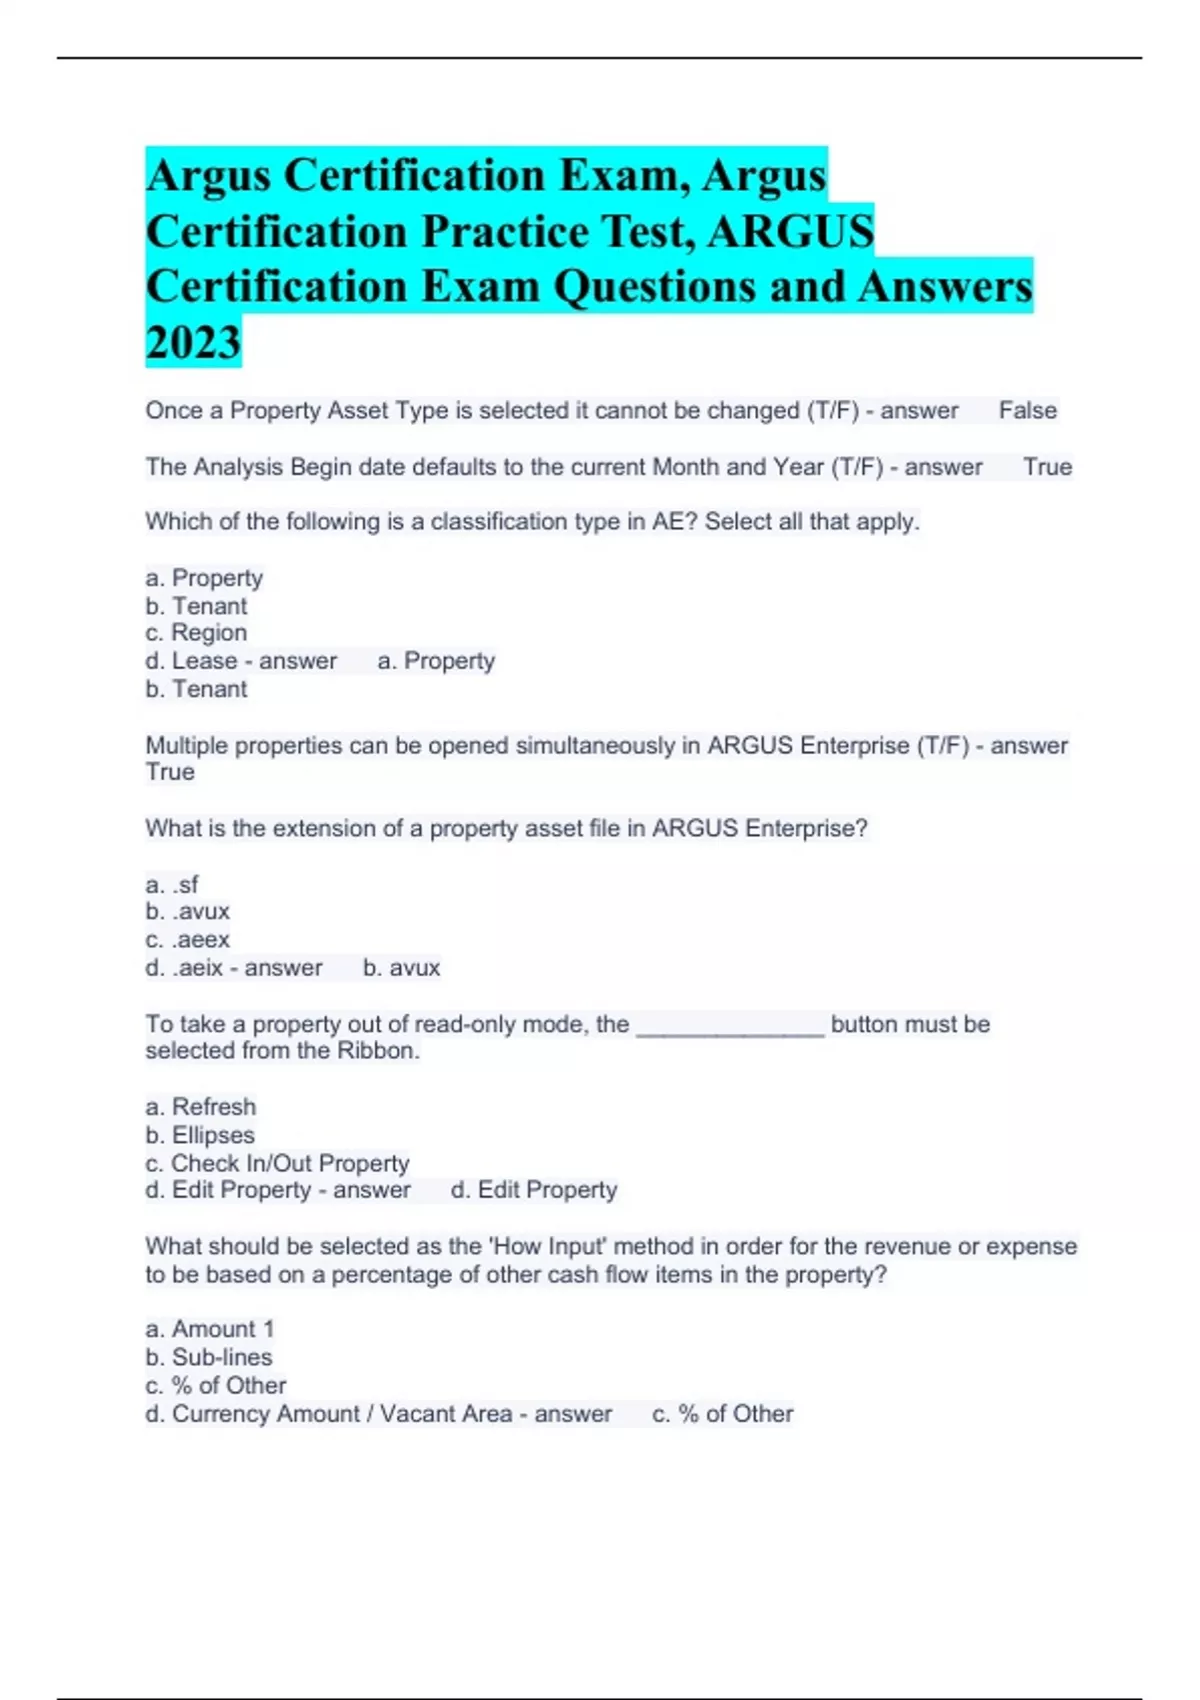 Argus Certification Exam Argus Certification Practice Test ARGUS